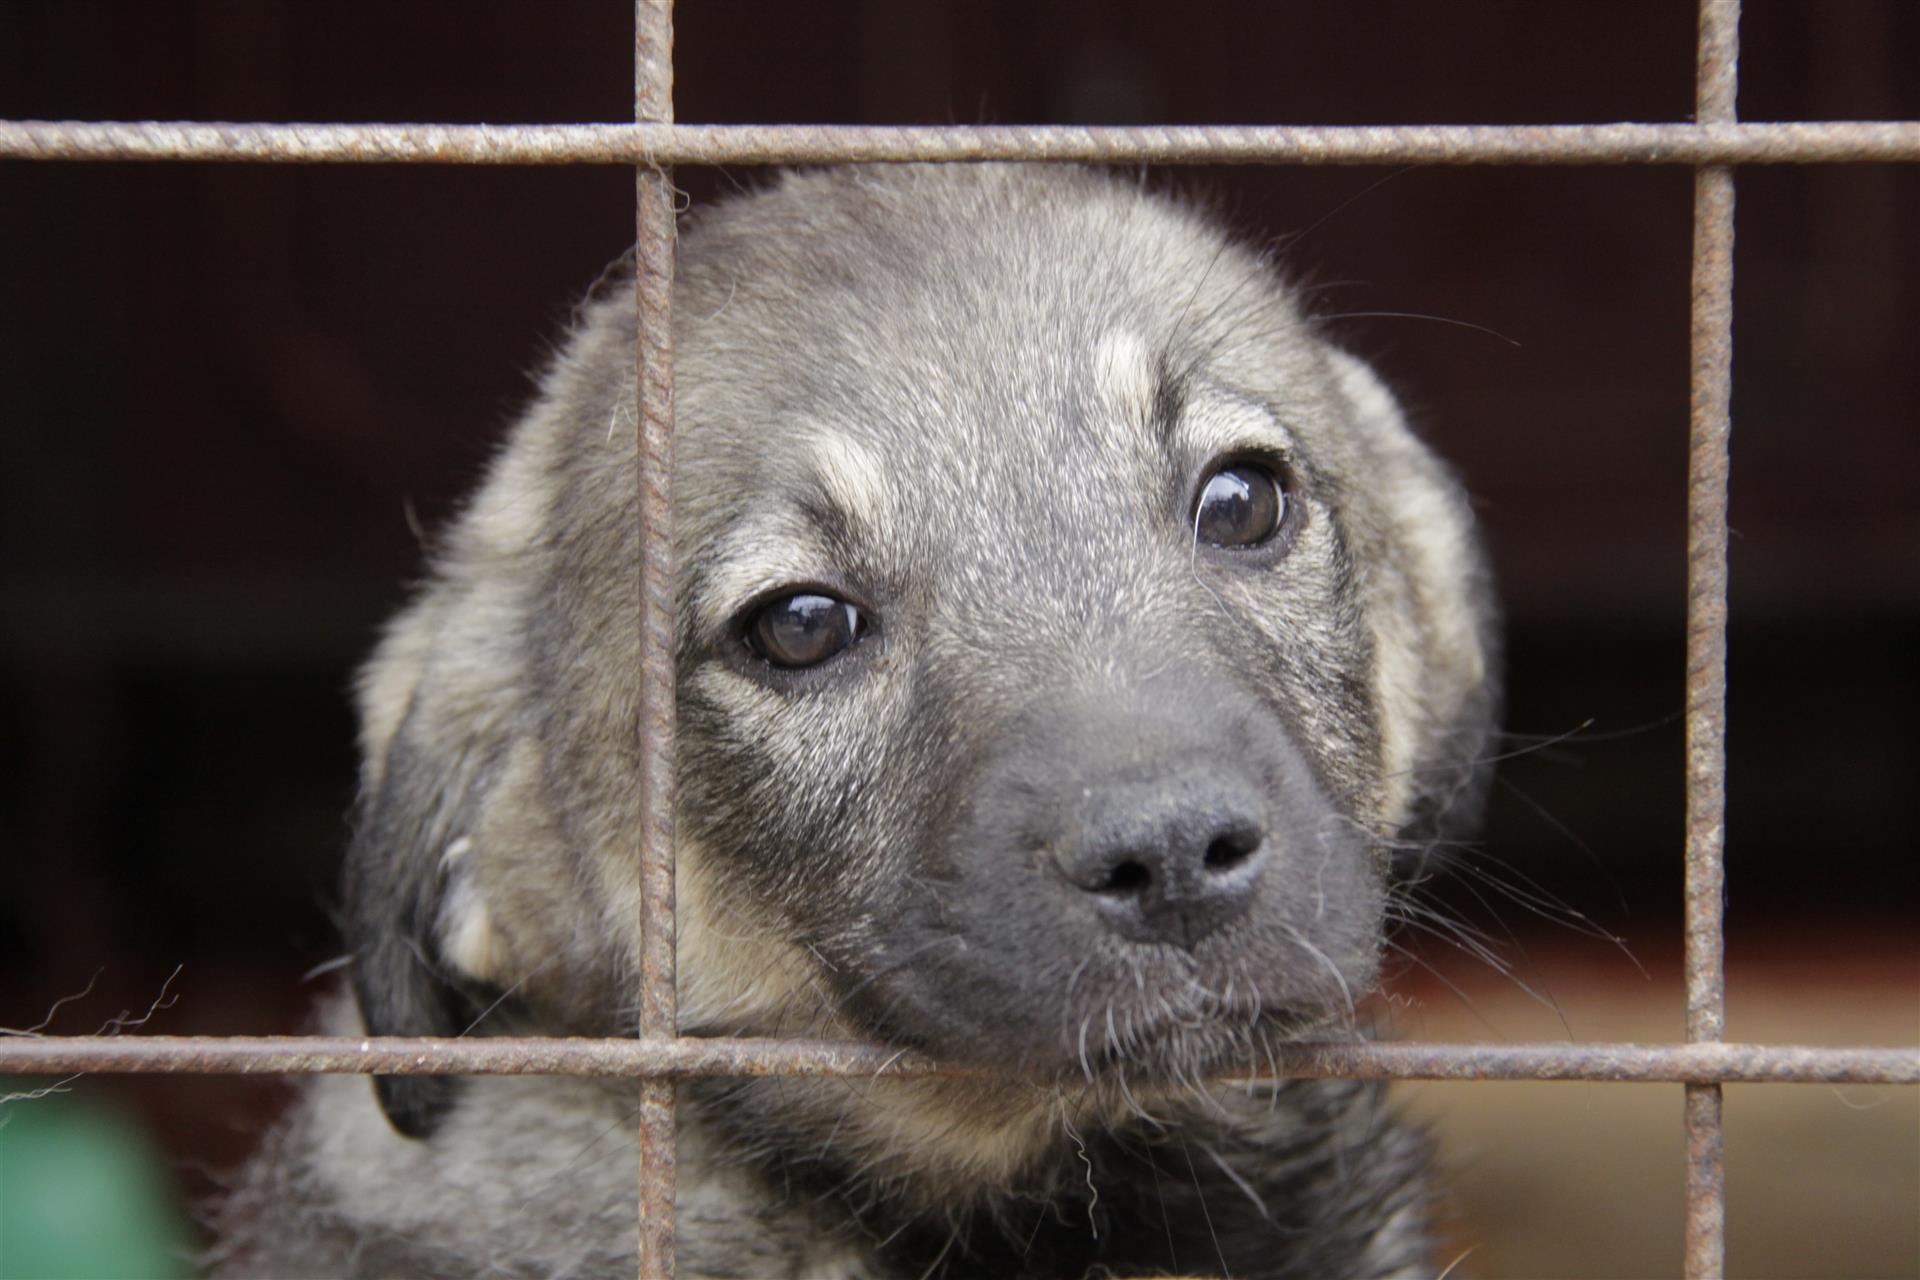 SUST-Tierhandelreport - Tierhandel unter dem Decknamen des Tierschutzes